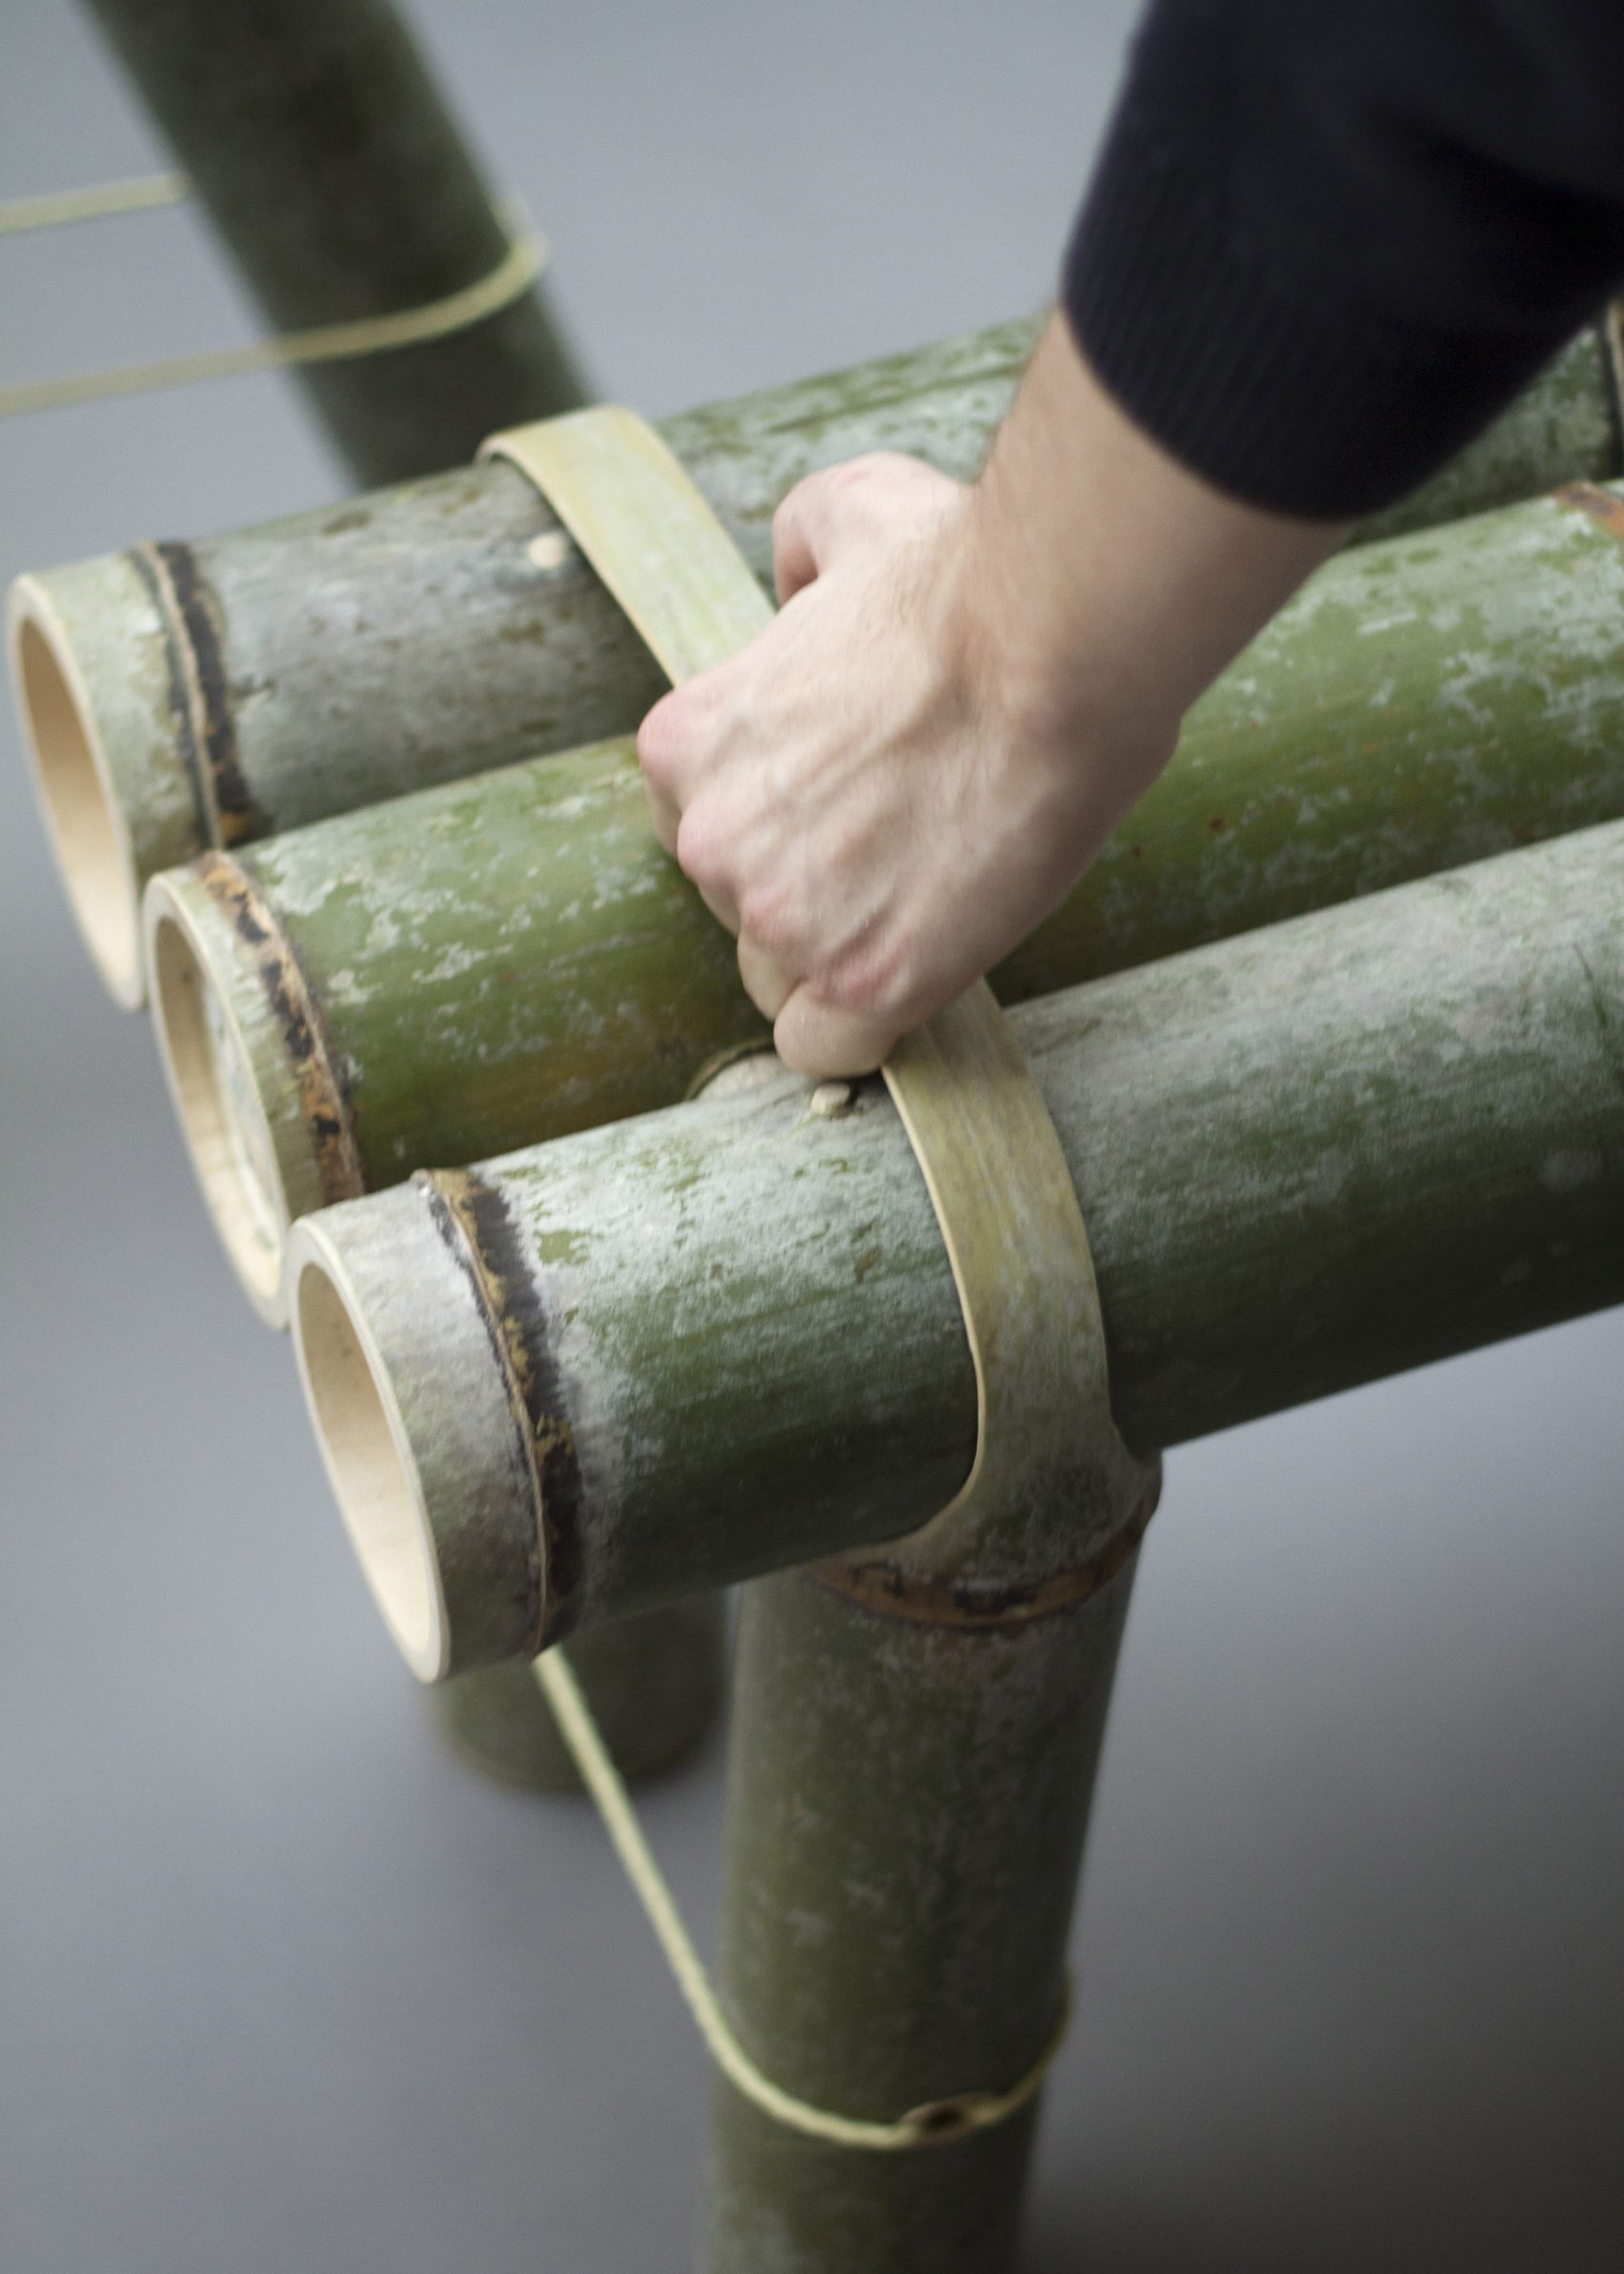 6100 Desain Membuat Kursi Dari Bambu HD